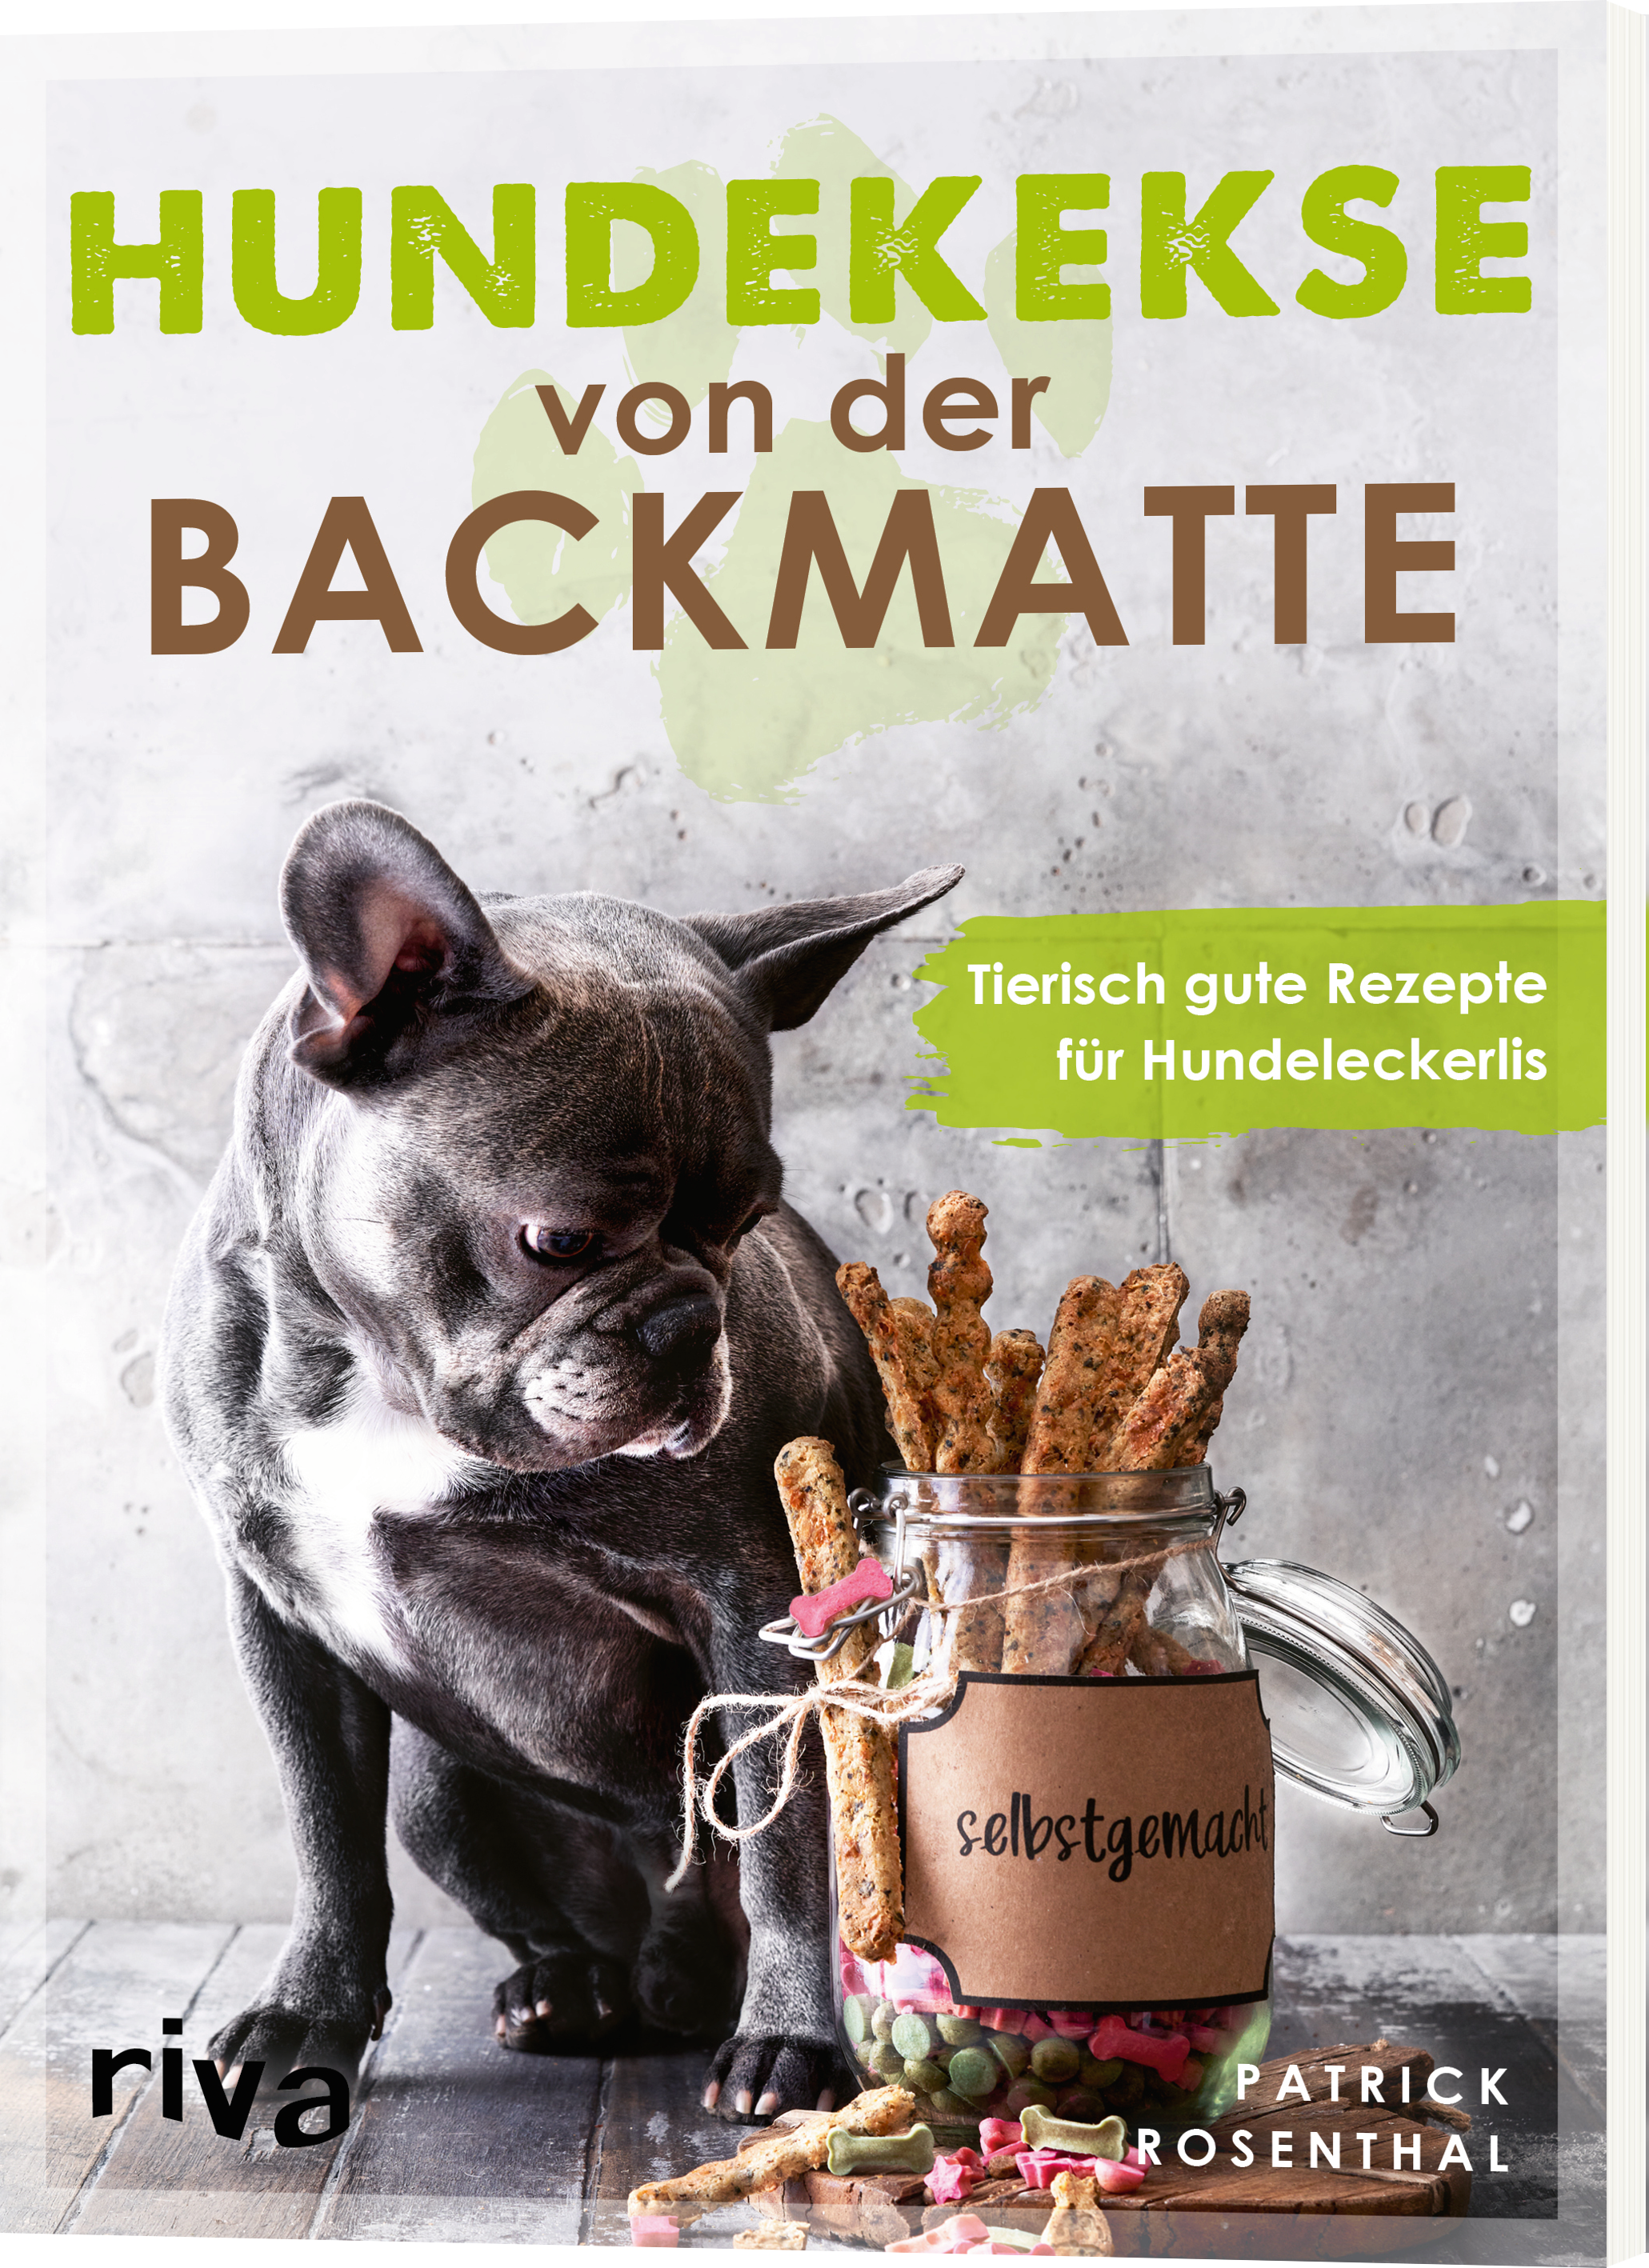 Backmatten für Hundefutter und Hundekekse